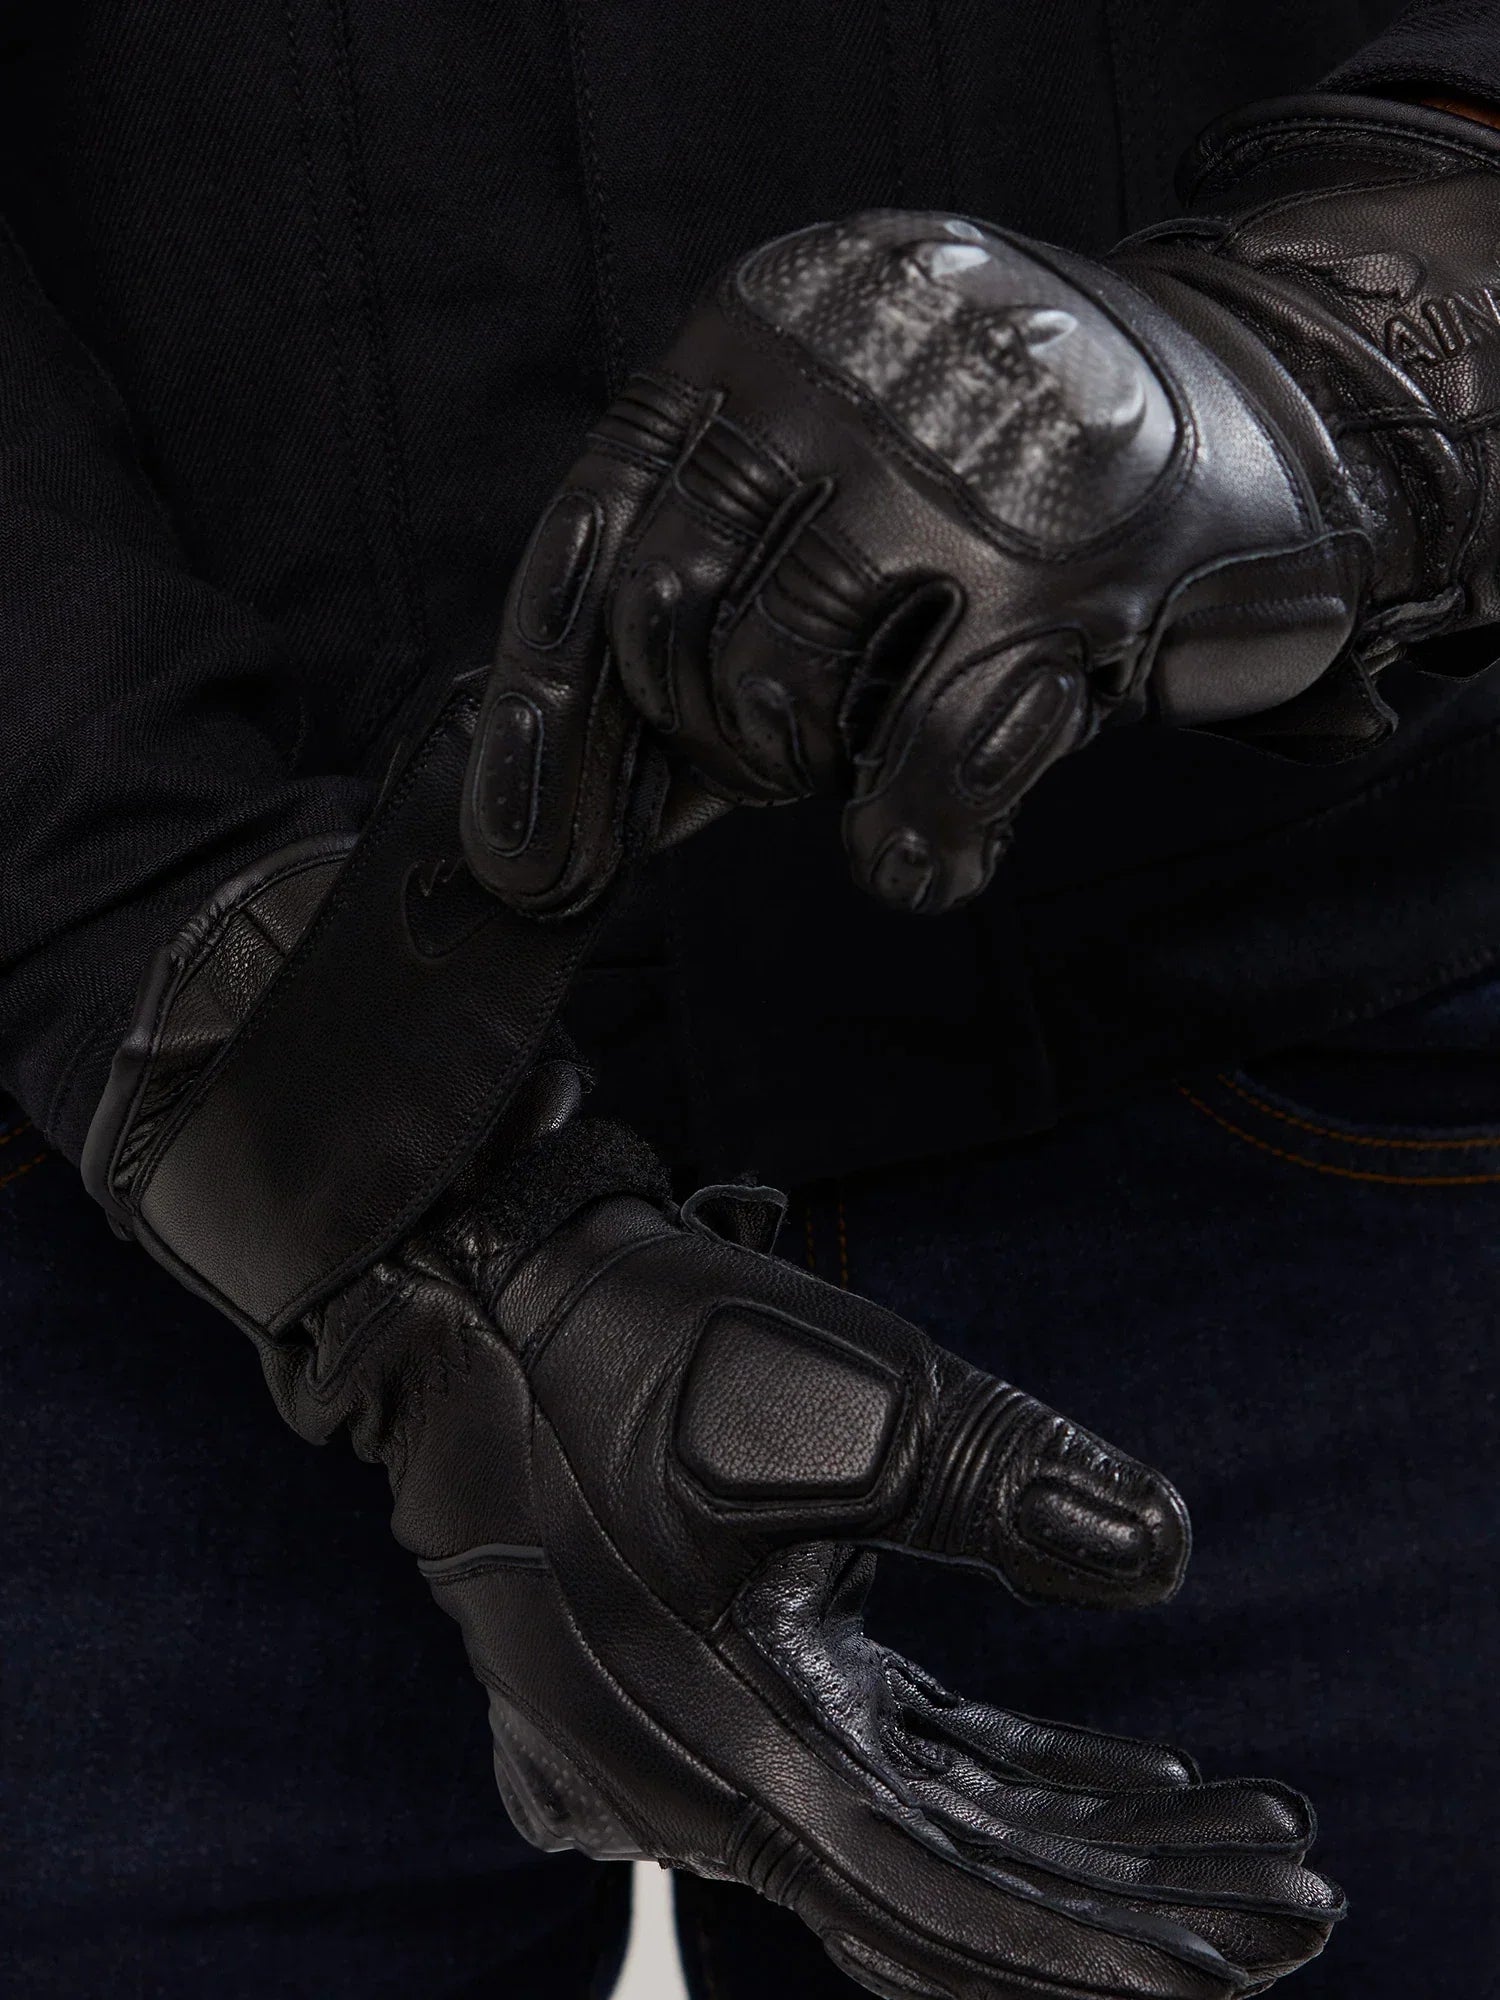 - SA1NT Road Gloves - - SA1NT